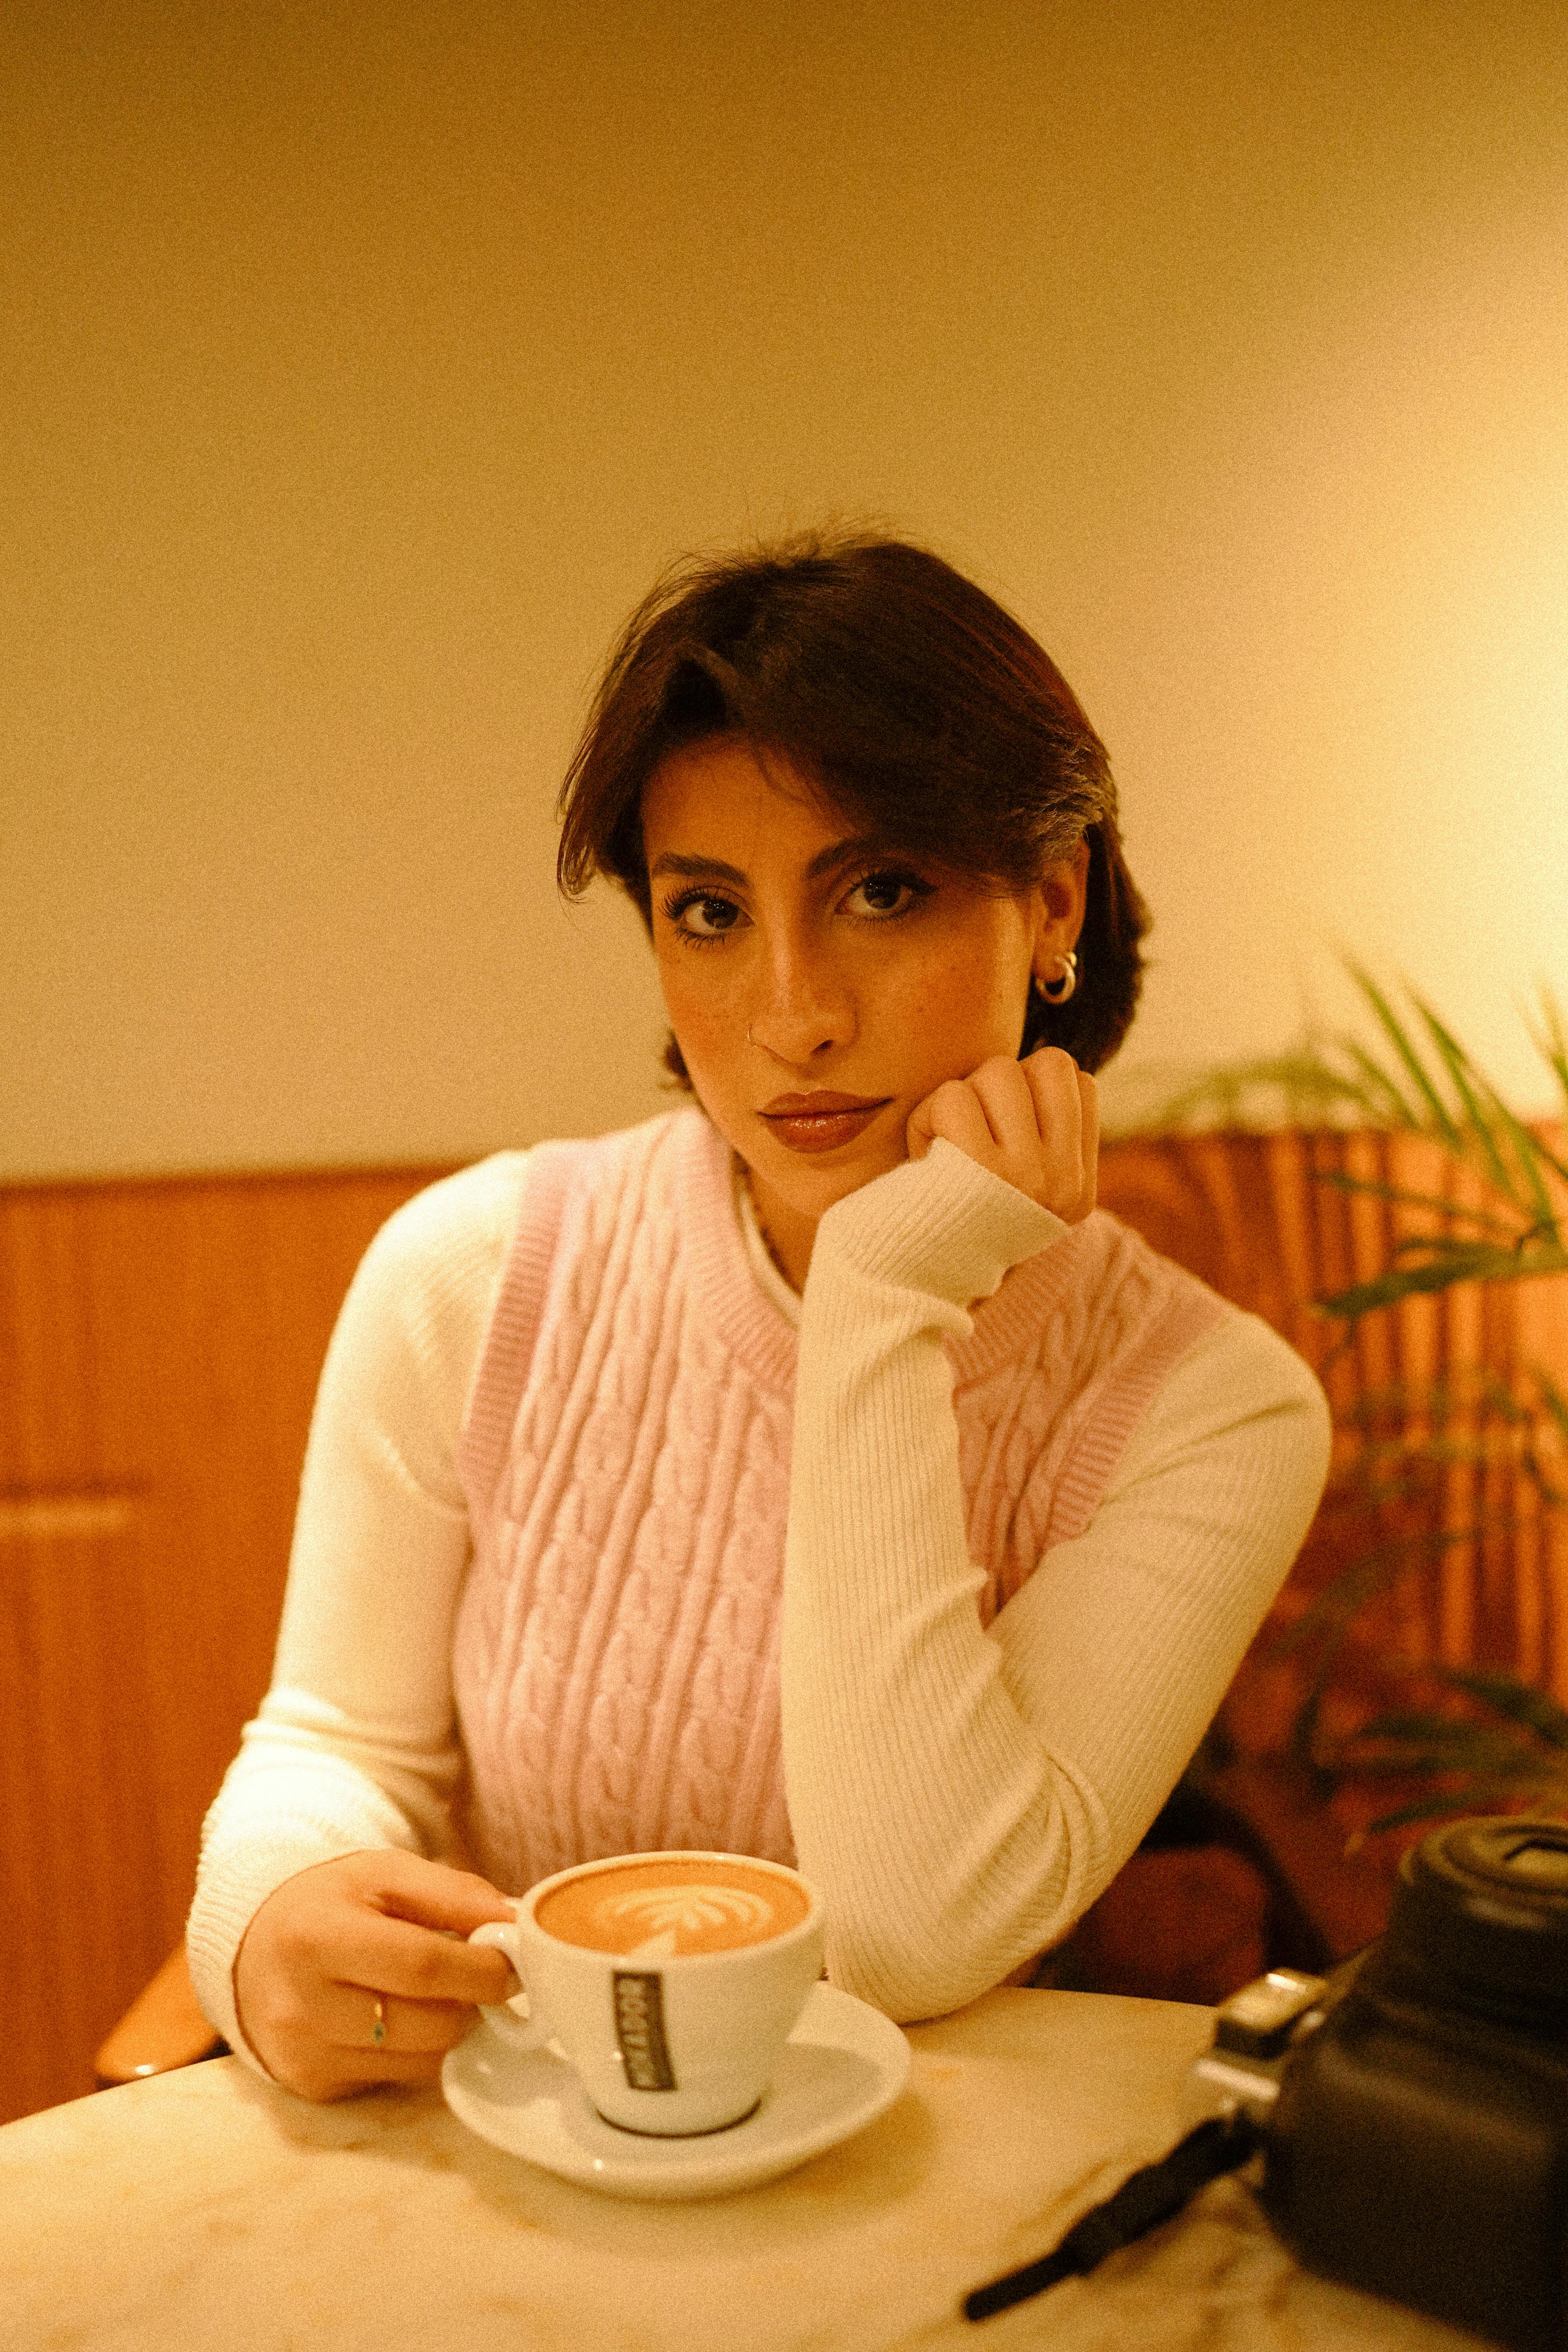 Une femme à l'air peu impressionné tout en prenant un café | Source : Pexels